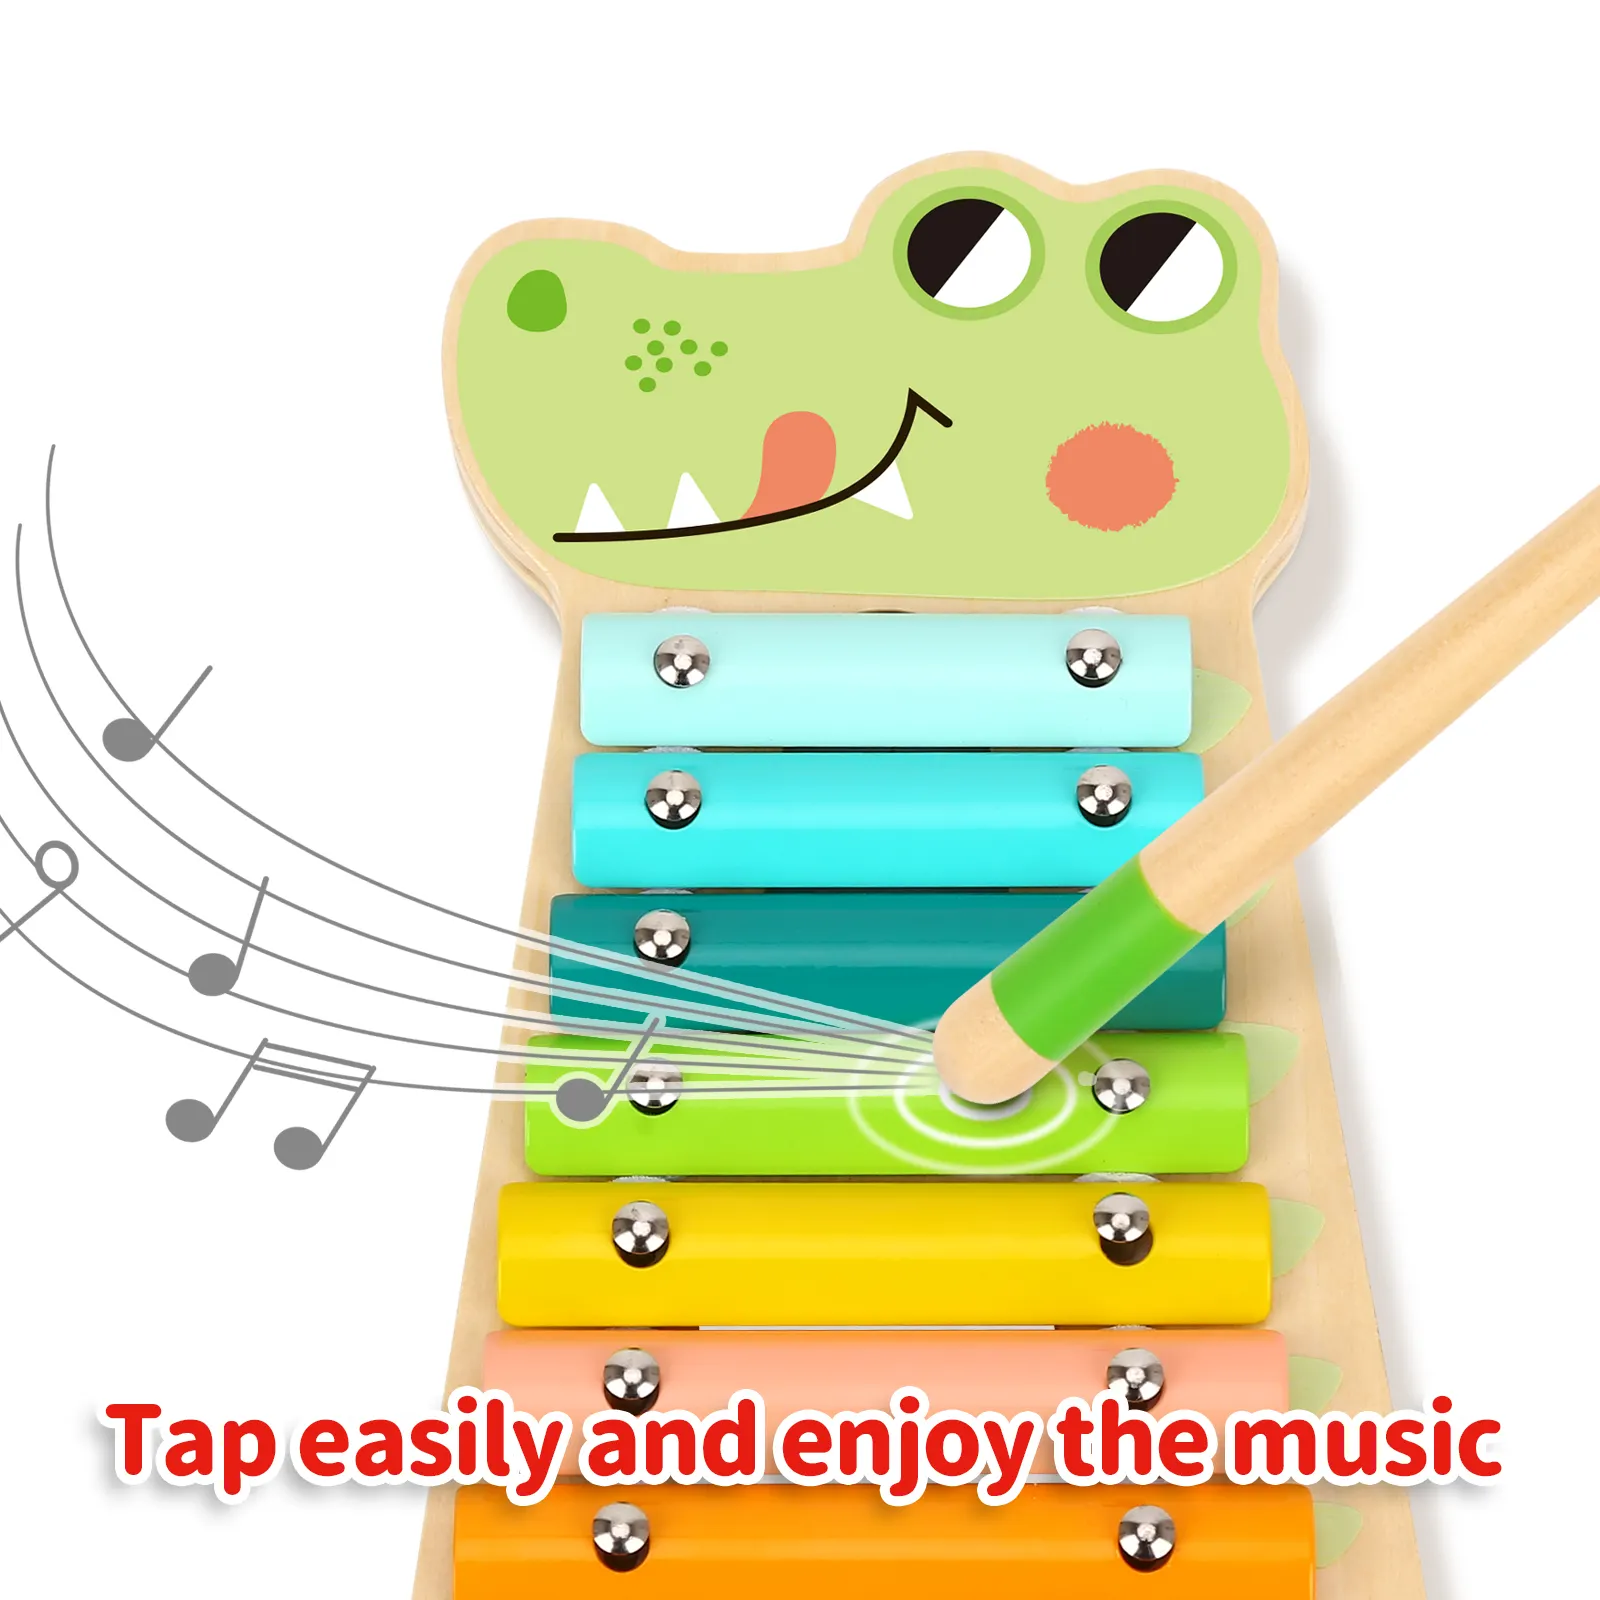 2022 नई थोक संगीत वाद्ययंत्र संगीत के लिए सेट लकड़ी के खिलौने बच्चे